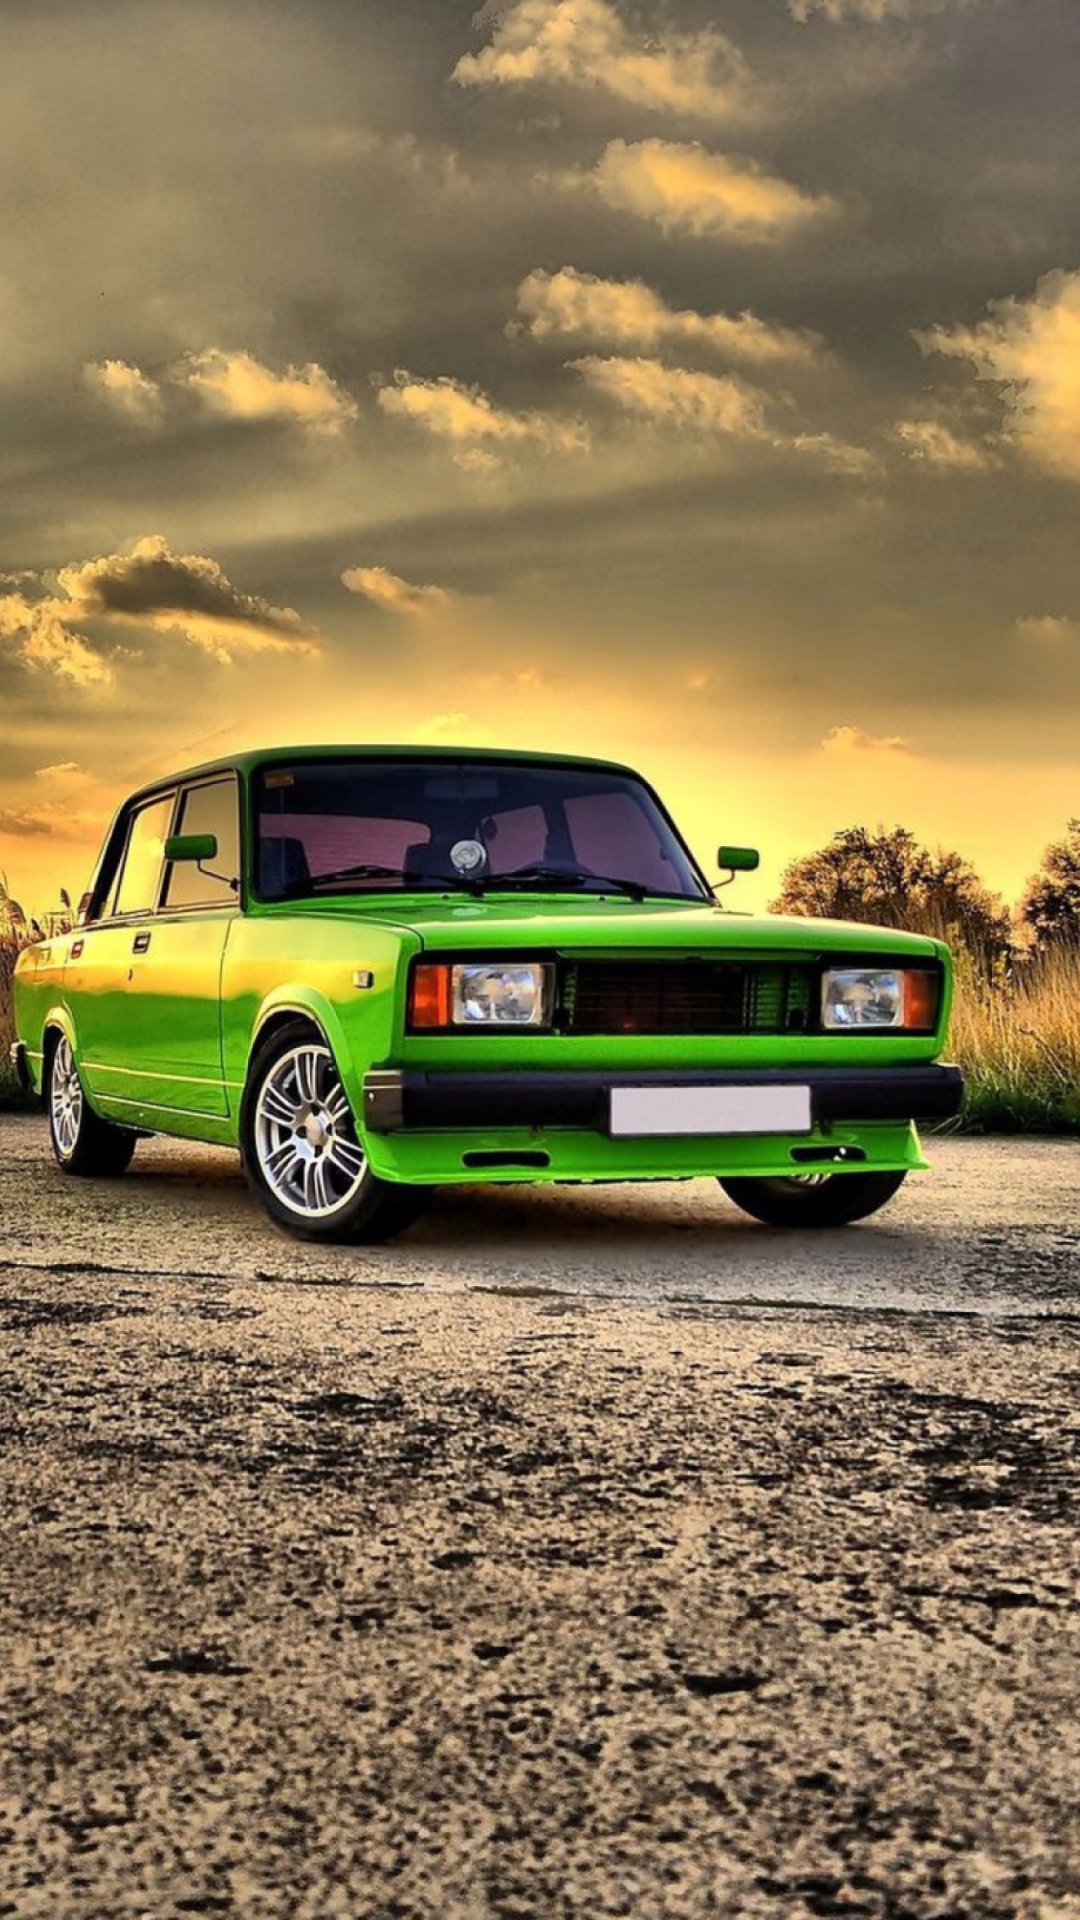 Green Russian Car Lada wallpaper 1080x1920